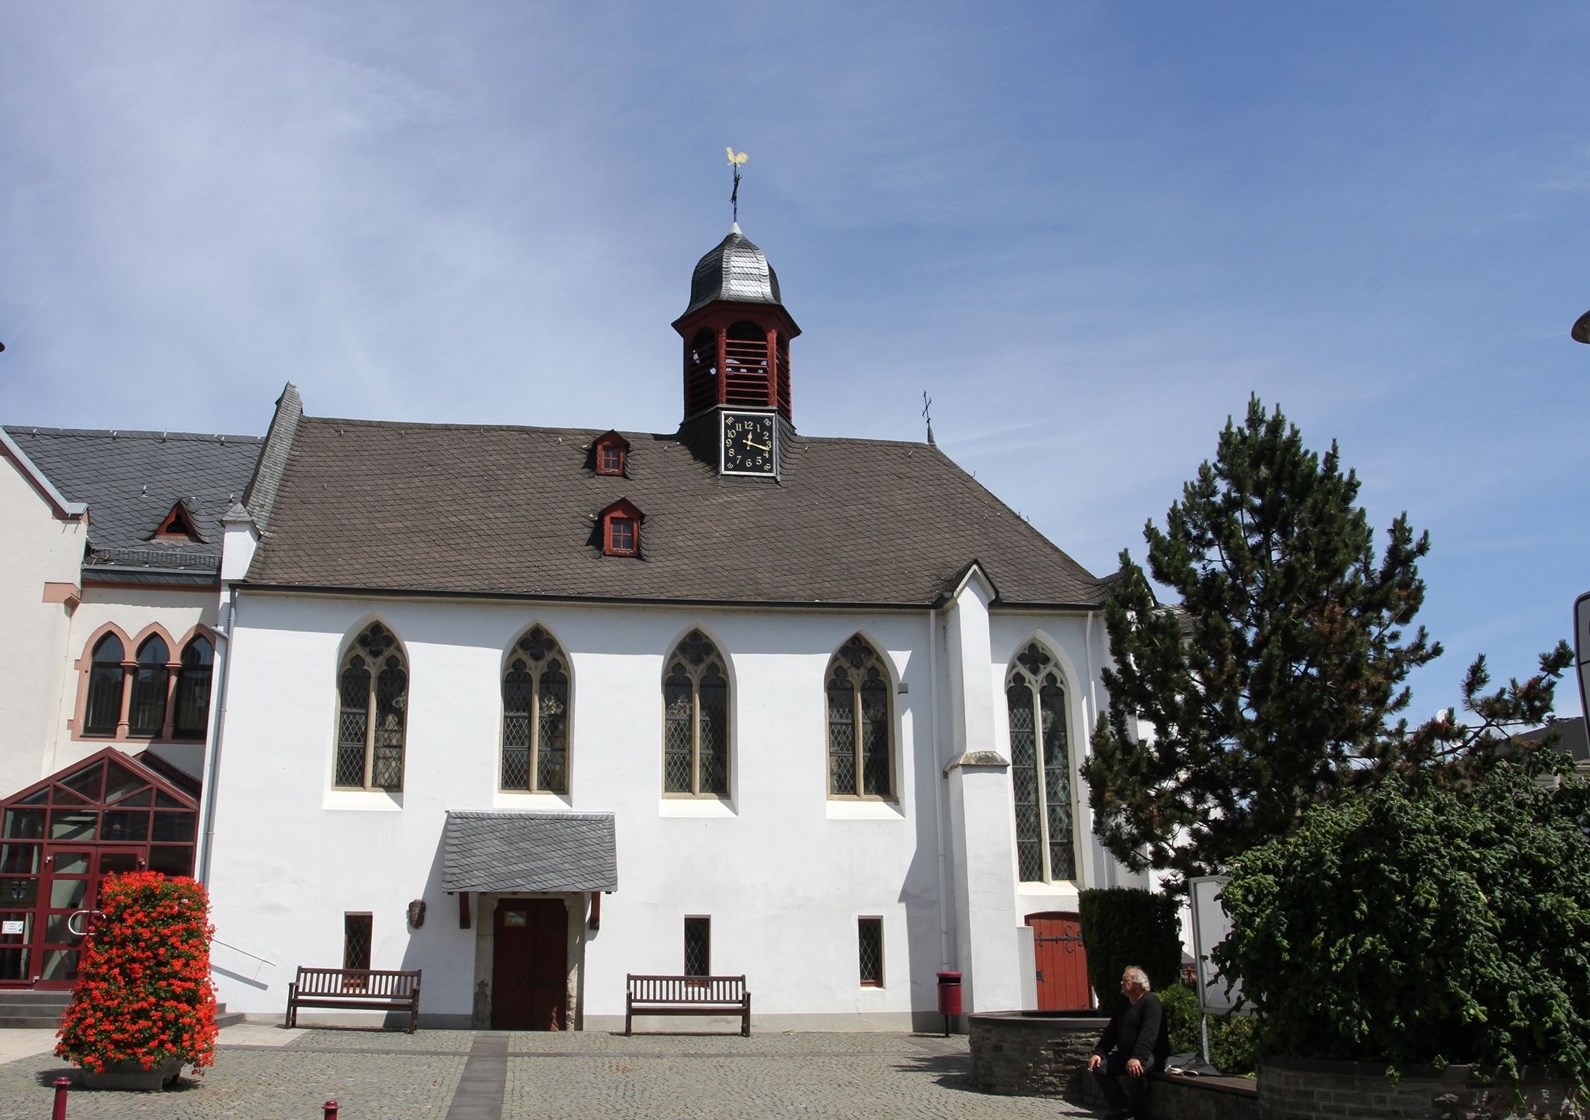 Alte Kapelle in Mülheim-Kärlich